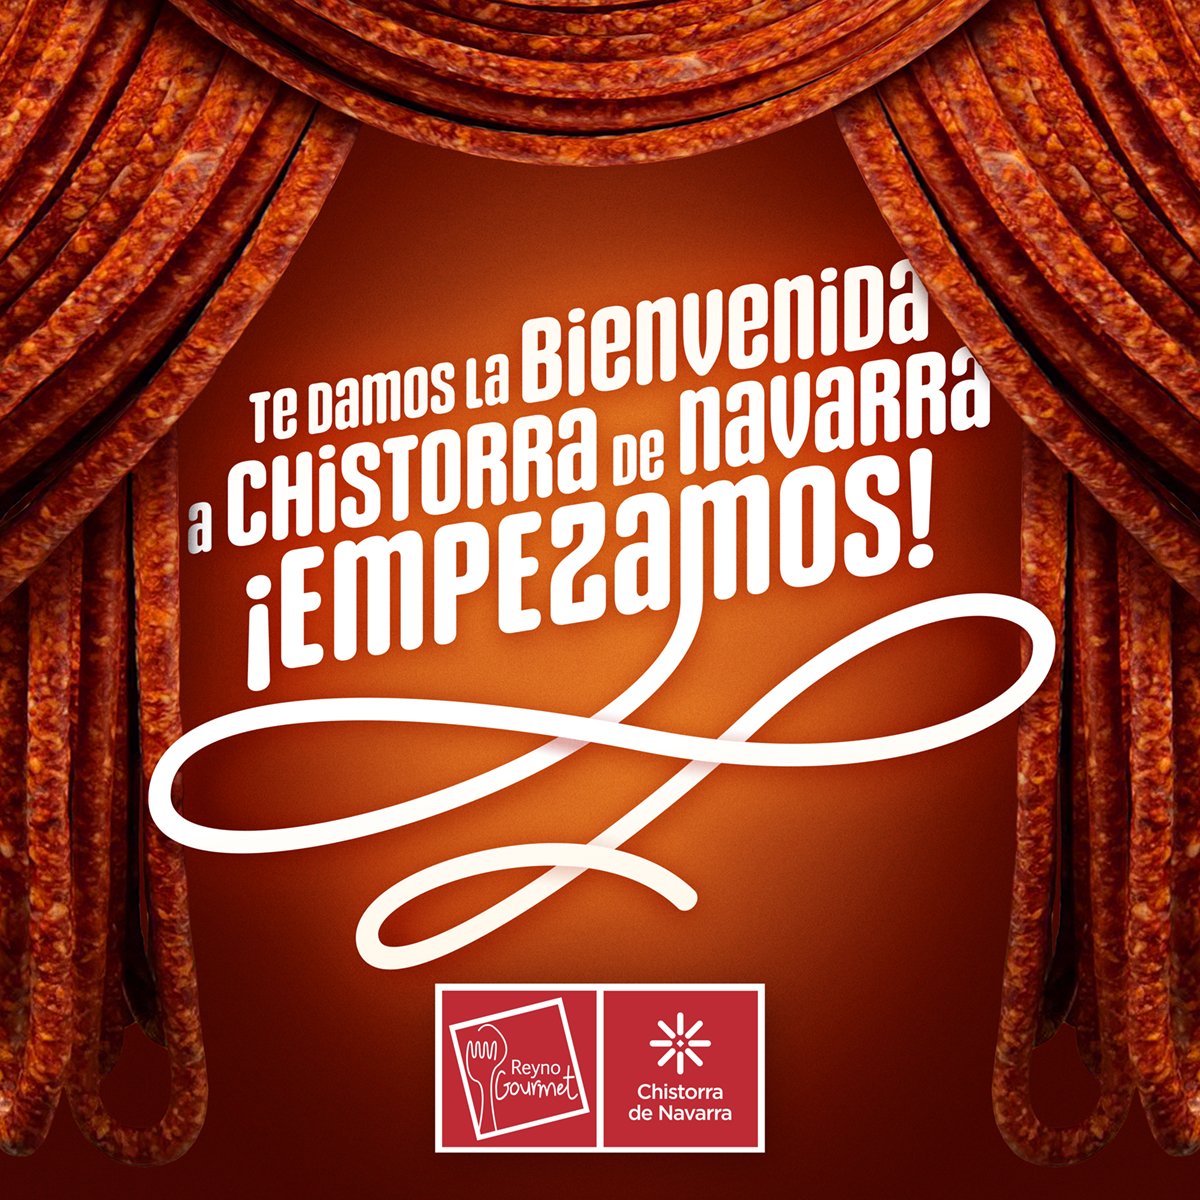 Os damos la bienvenida a nuestras redes sociales. #chistorra #txistorra #Navarra @Reyno_Gourmet nos ayudas?